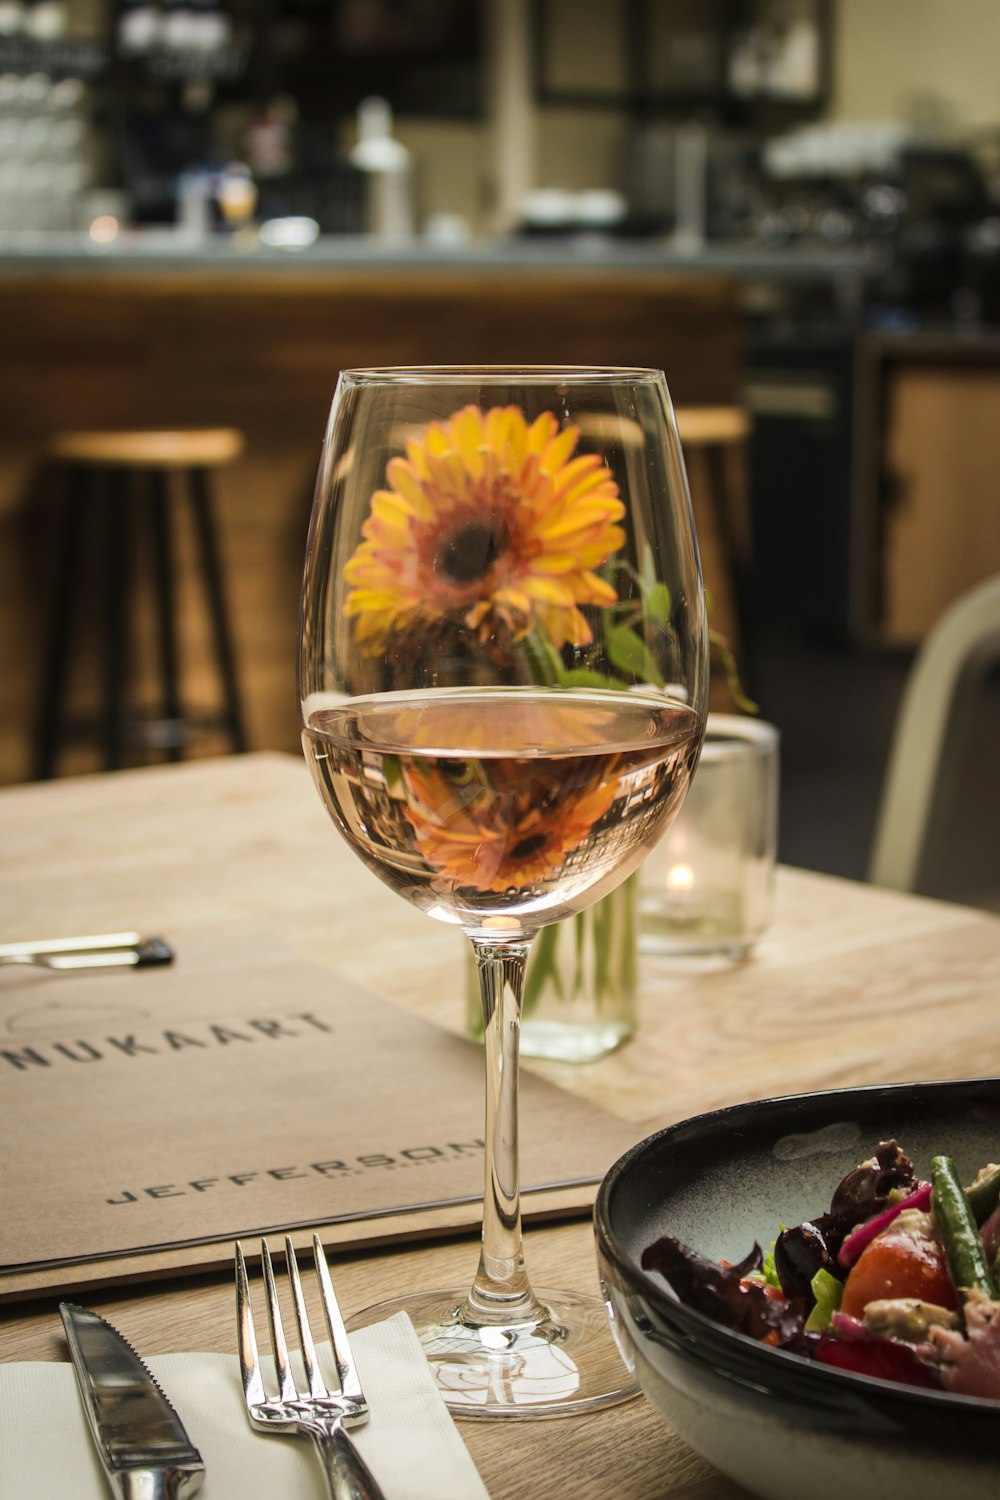 Weißwein auf Glas in der Nähe von Gabel und Messer aus grauem Edelstahl neben orangefarbener Gerbera-Gänseblümchenblüte auf dem Tisch